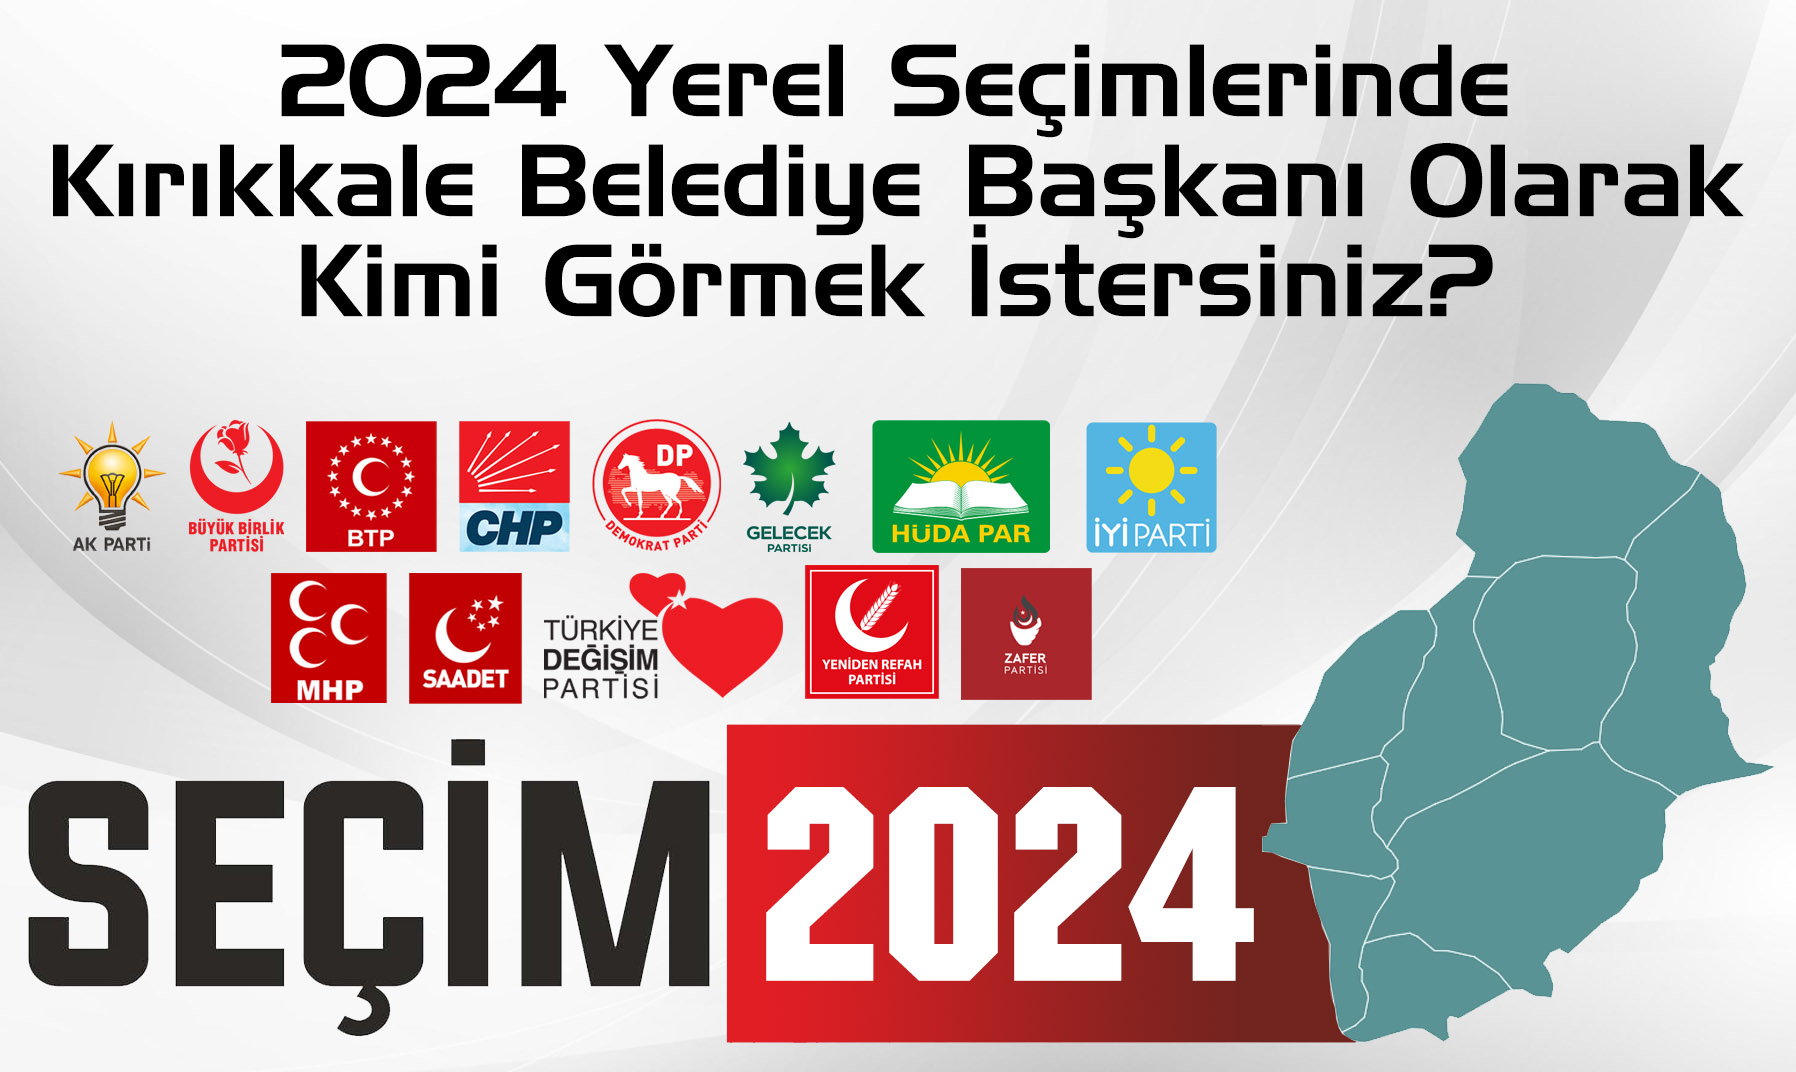 Sizce Kırıkkale Belediye Başkanı Kim Olmalı? (Yerel Seçim 2024) - Kırıkkale Haber, Son Dakika Kırıkkale Haberleri